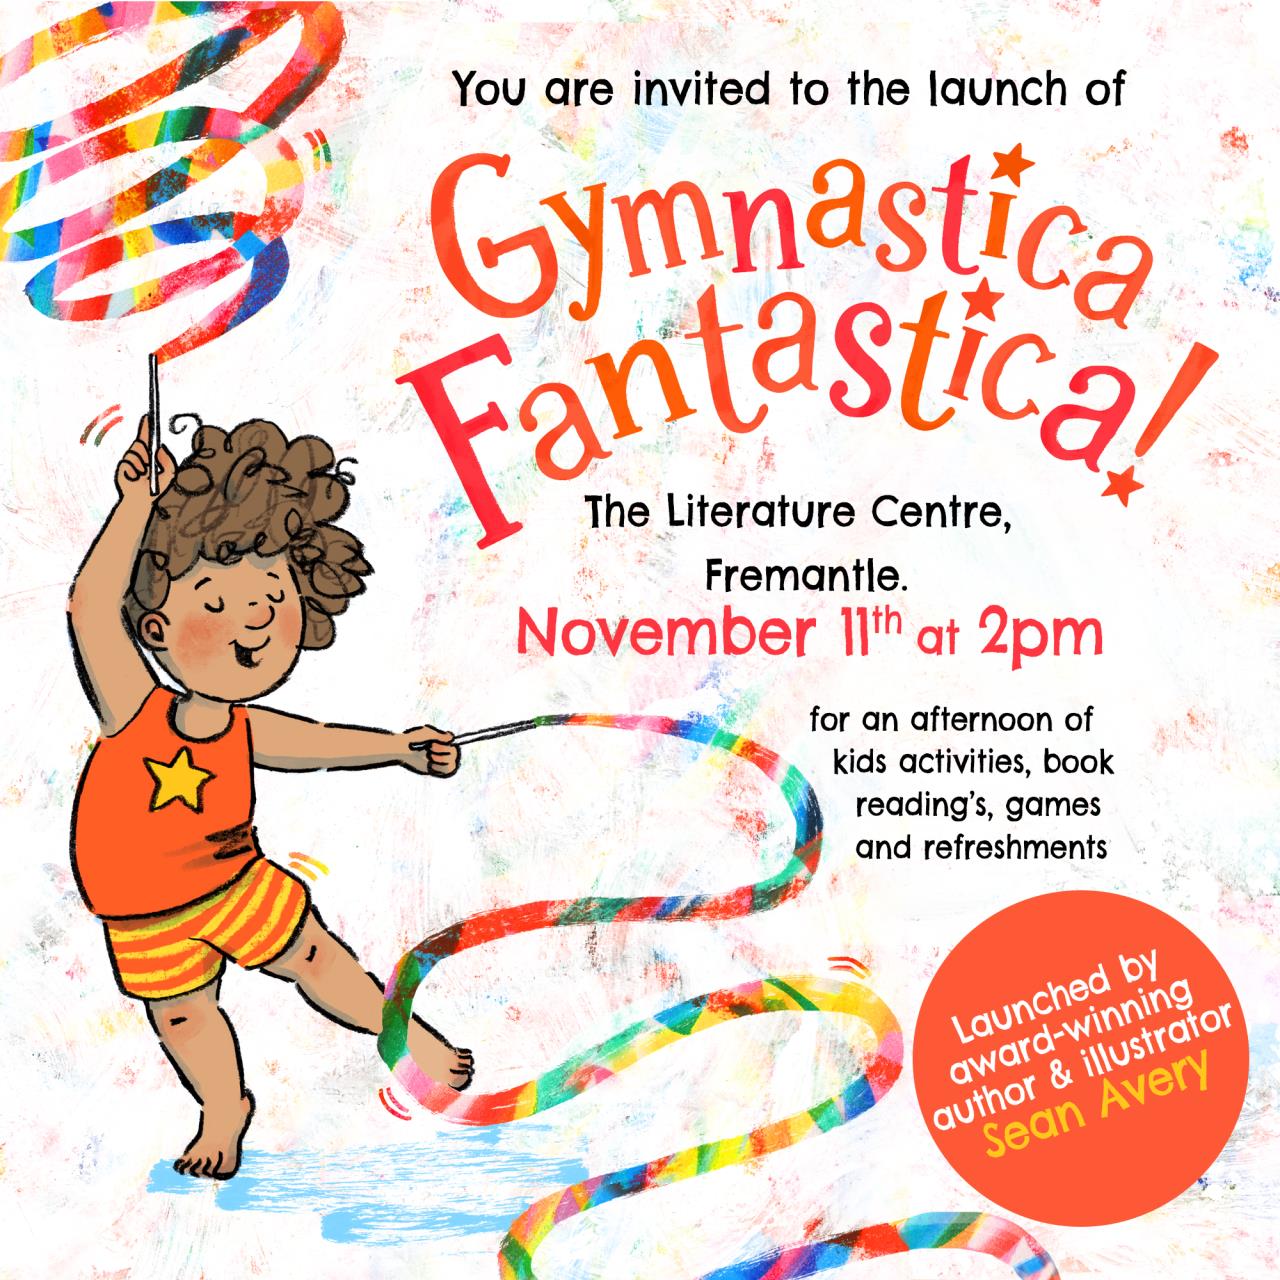 Gymnastica Fantastica! Book Launch